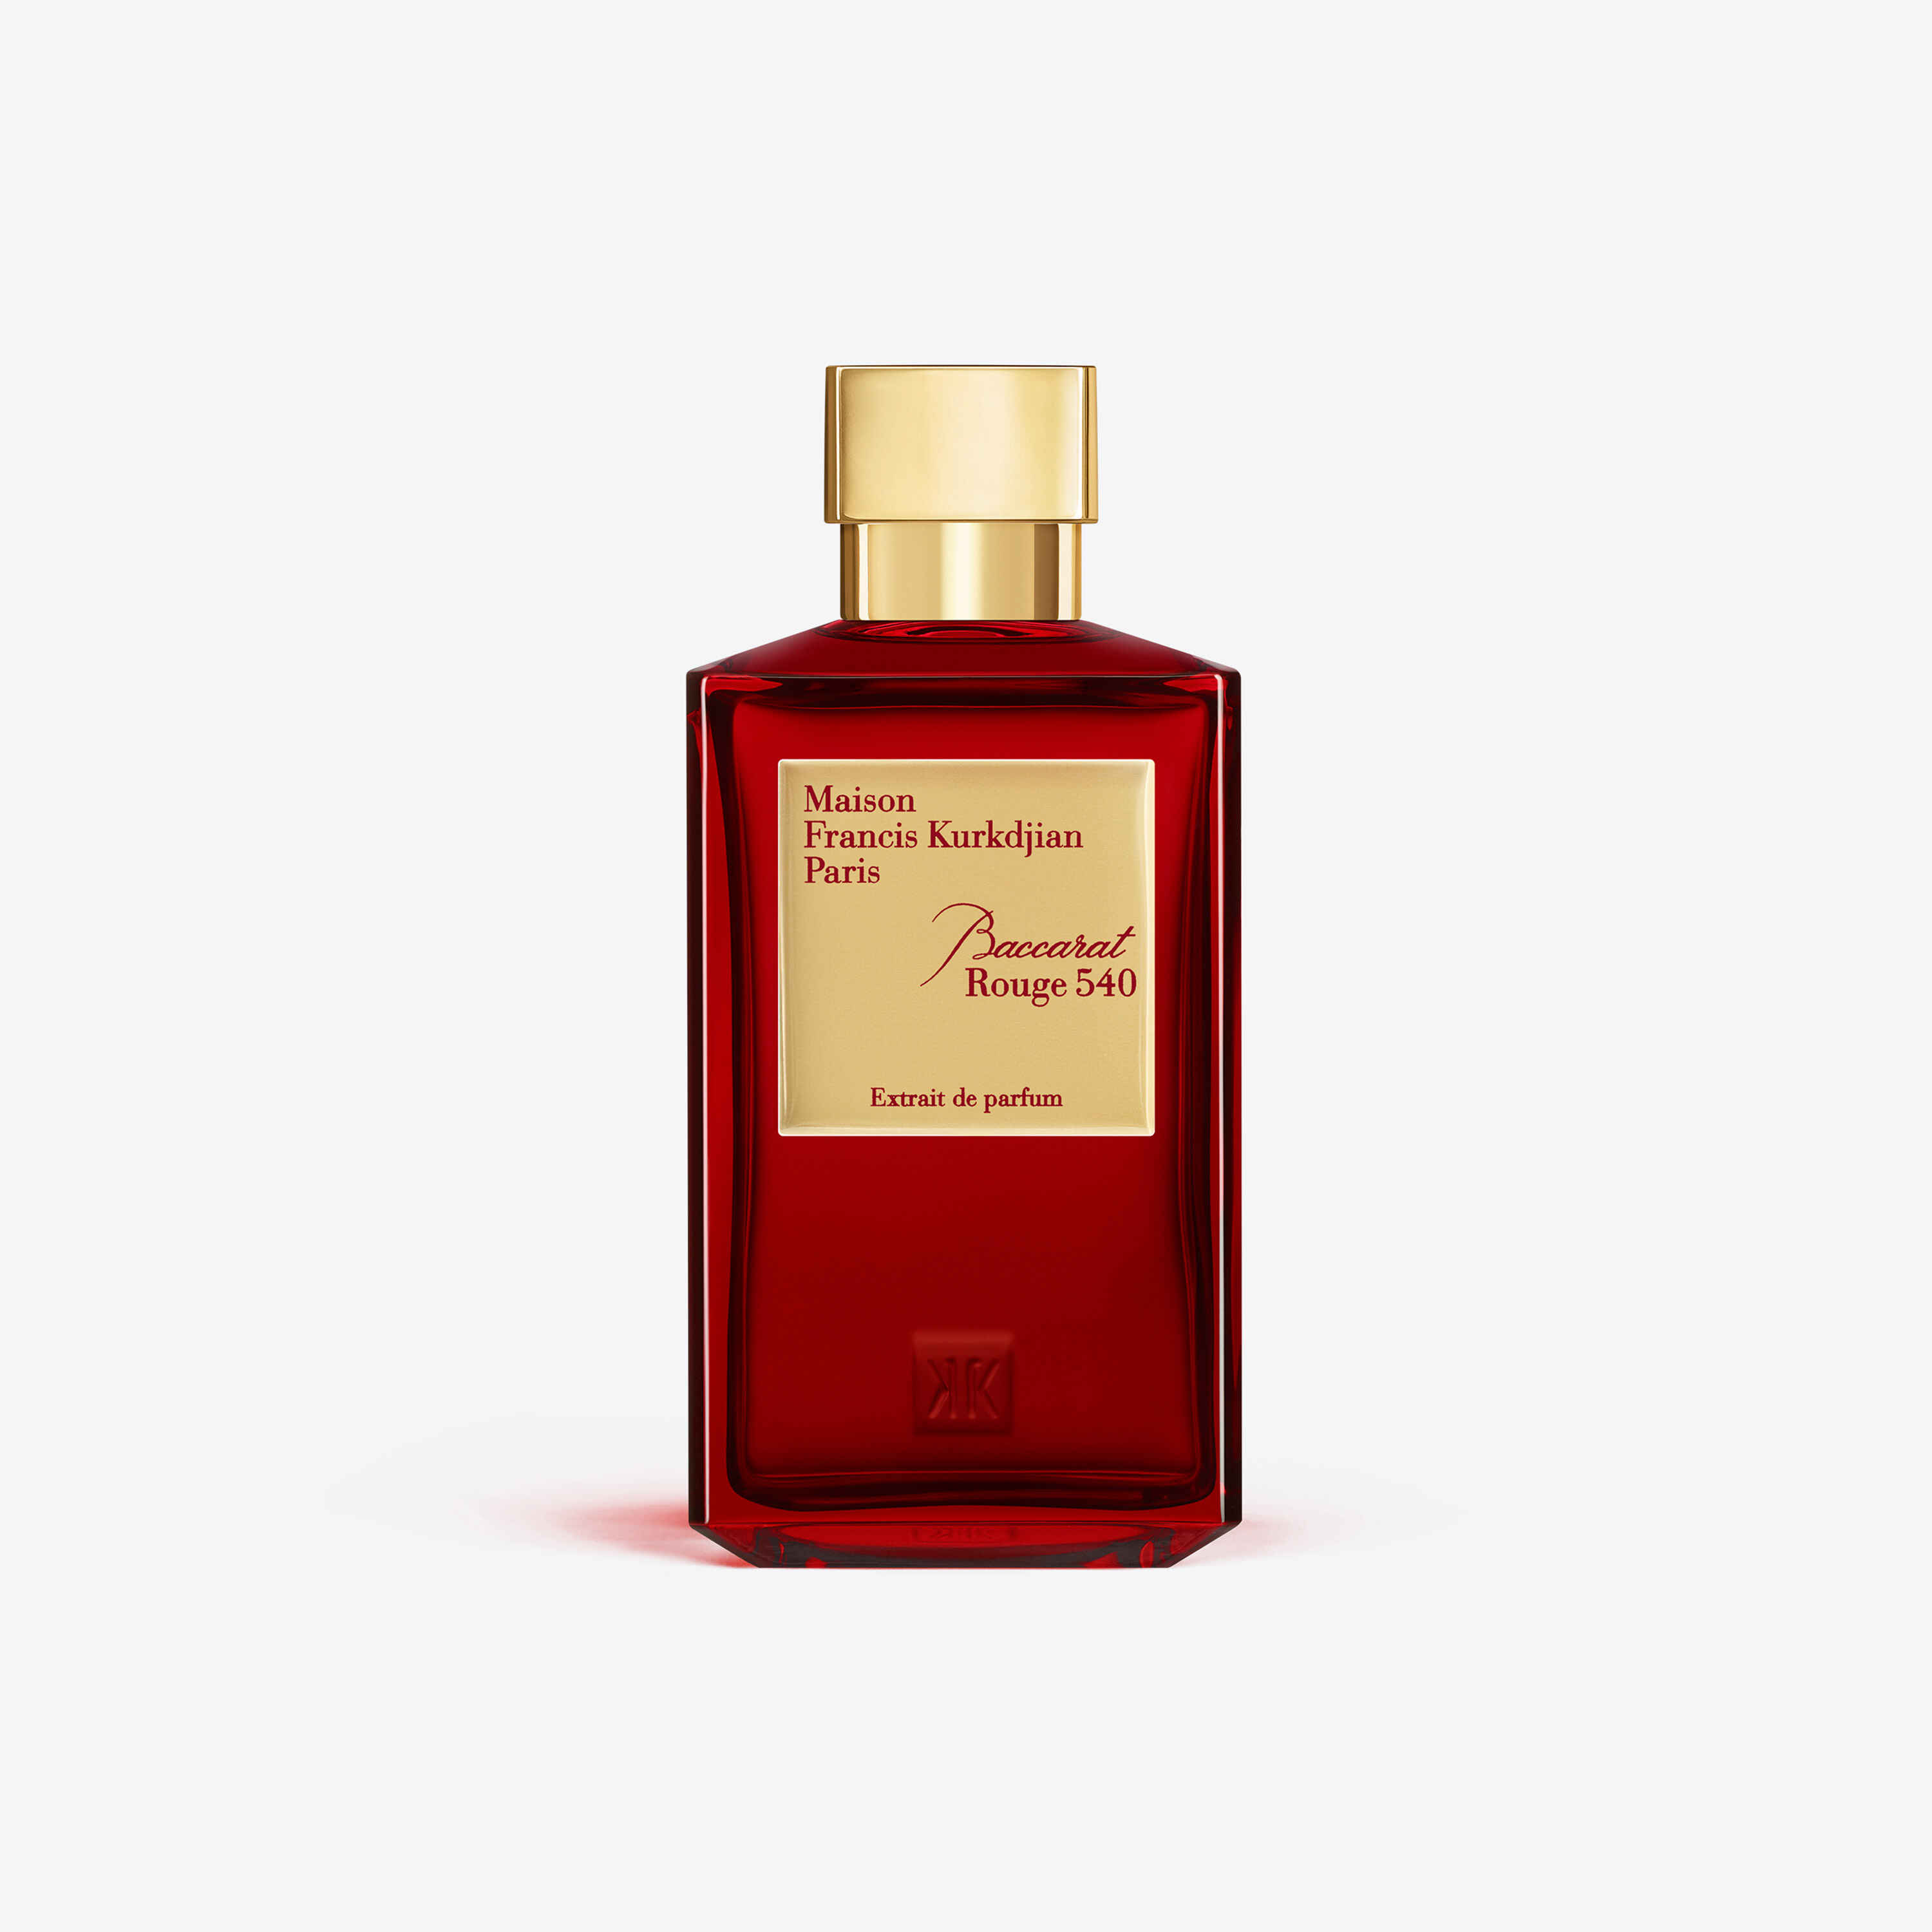 Baccarat Rouge 540 Extrait de Parfum 200 mL | Baccarat